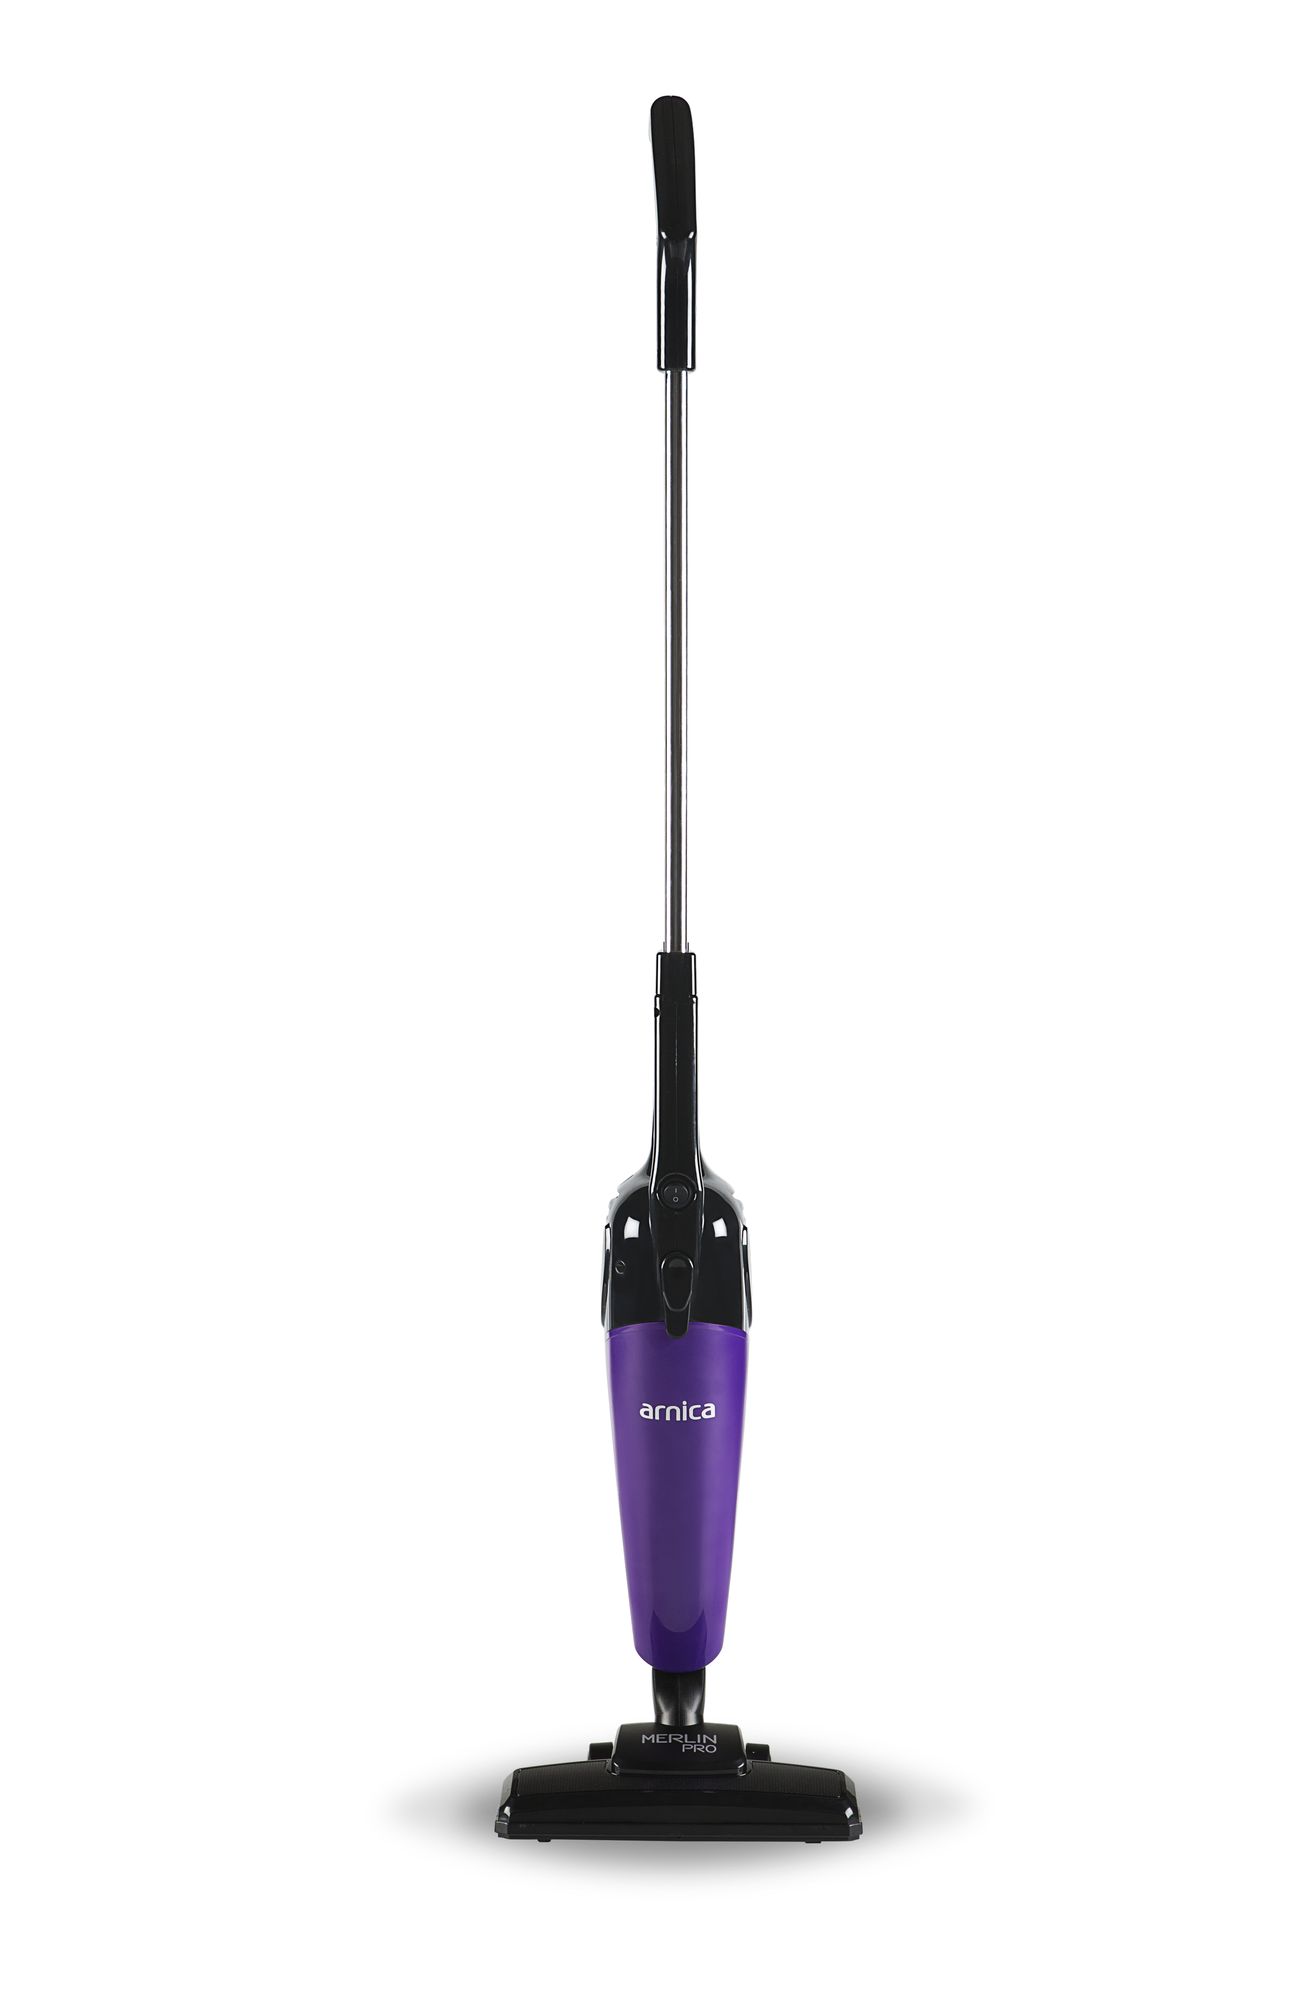 Пылесос вертикальный ARNICA Merlin Pro, фиолетовый цена и фото